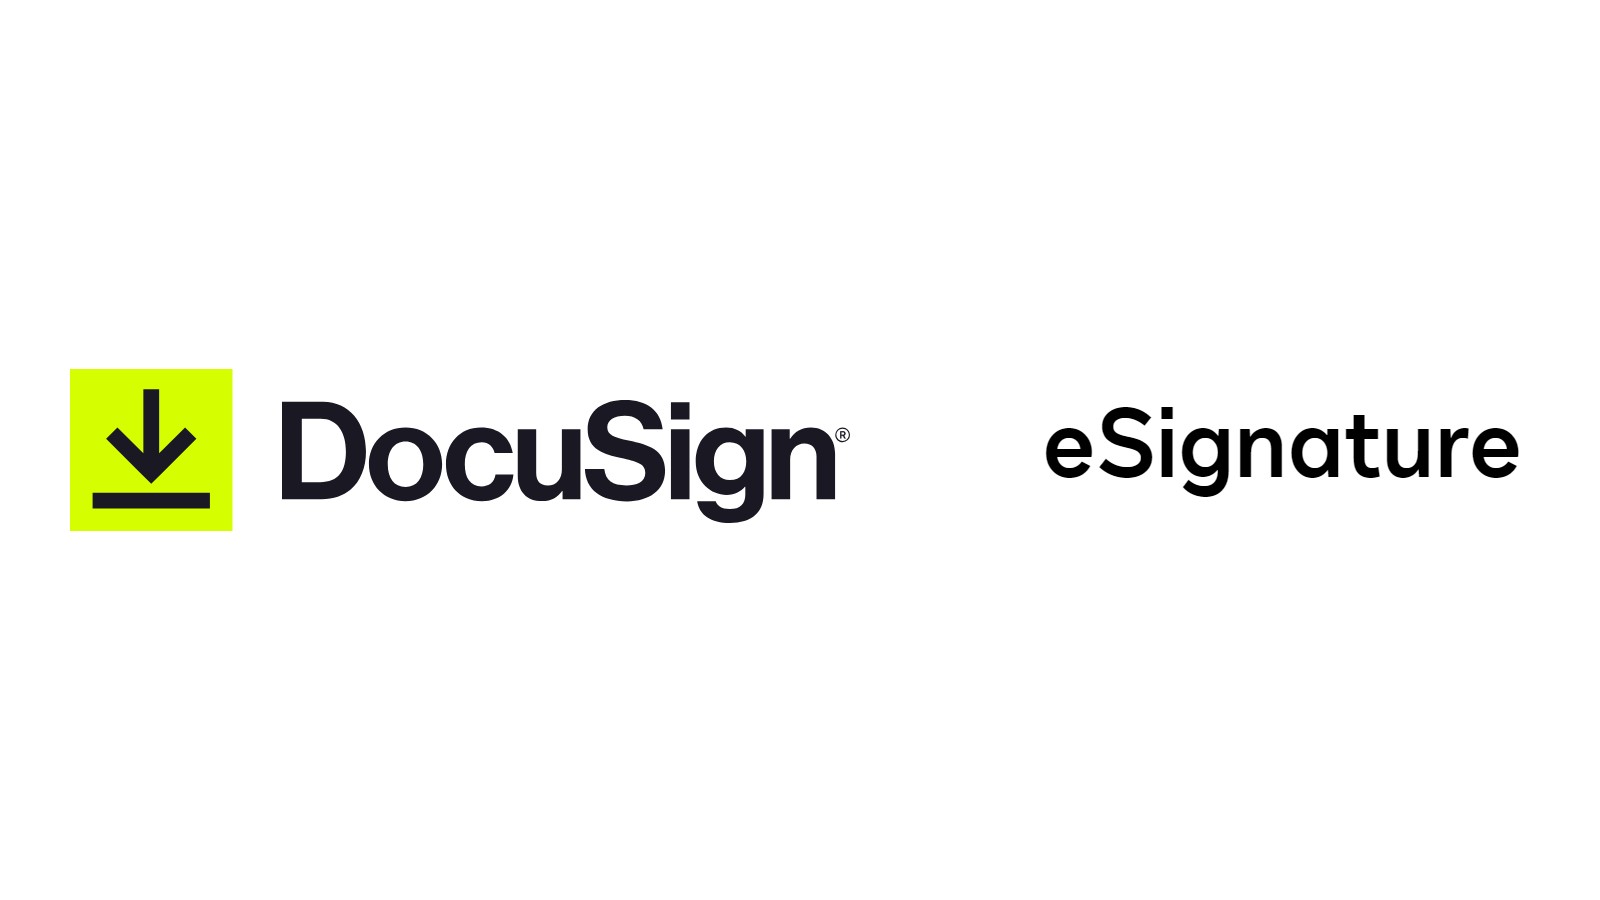 Bir E-imza şirketi olan DocuSign potansiyel satışı değerlendirecek |  Teknoloji Sektörü Güncellemesi